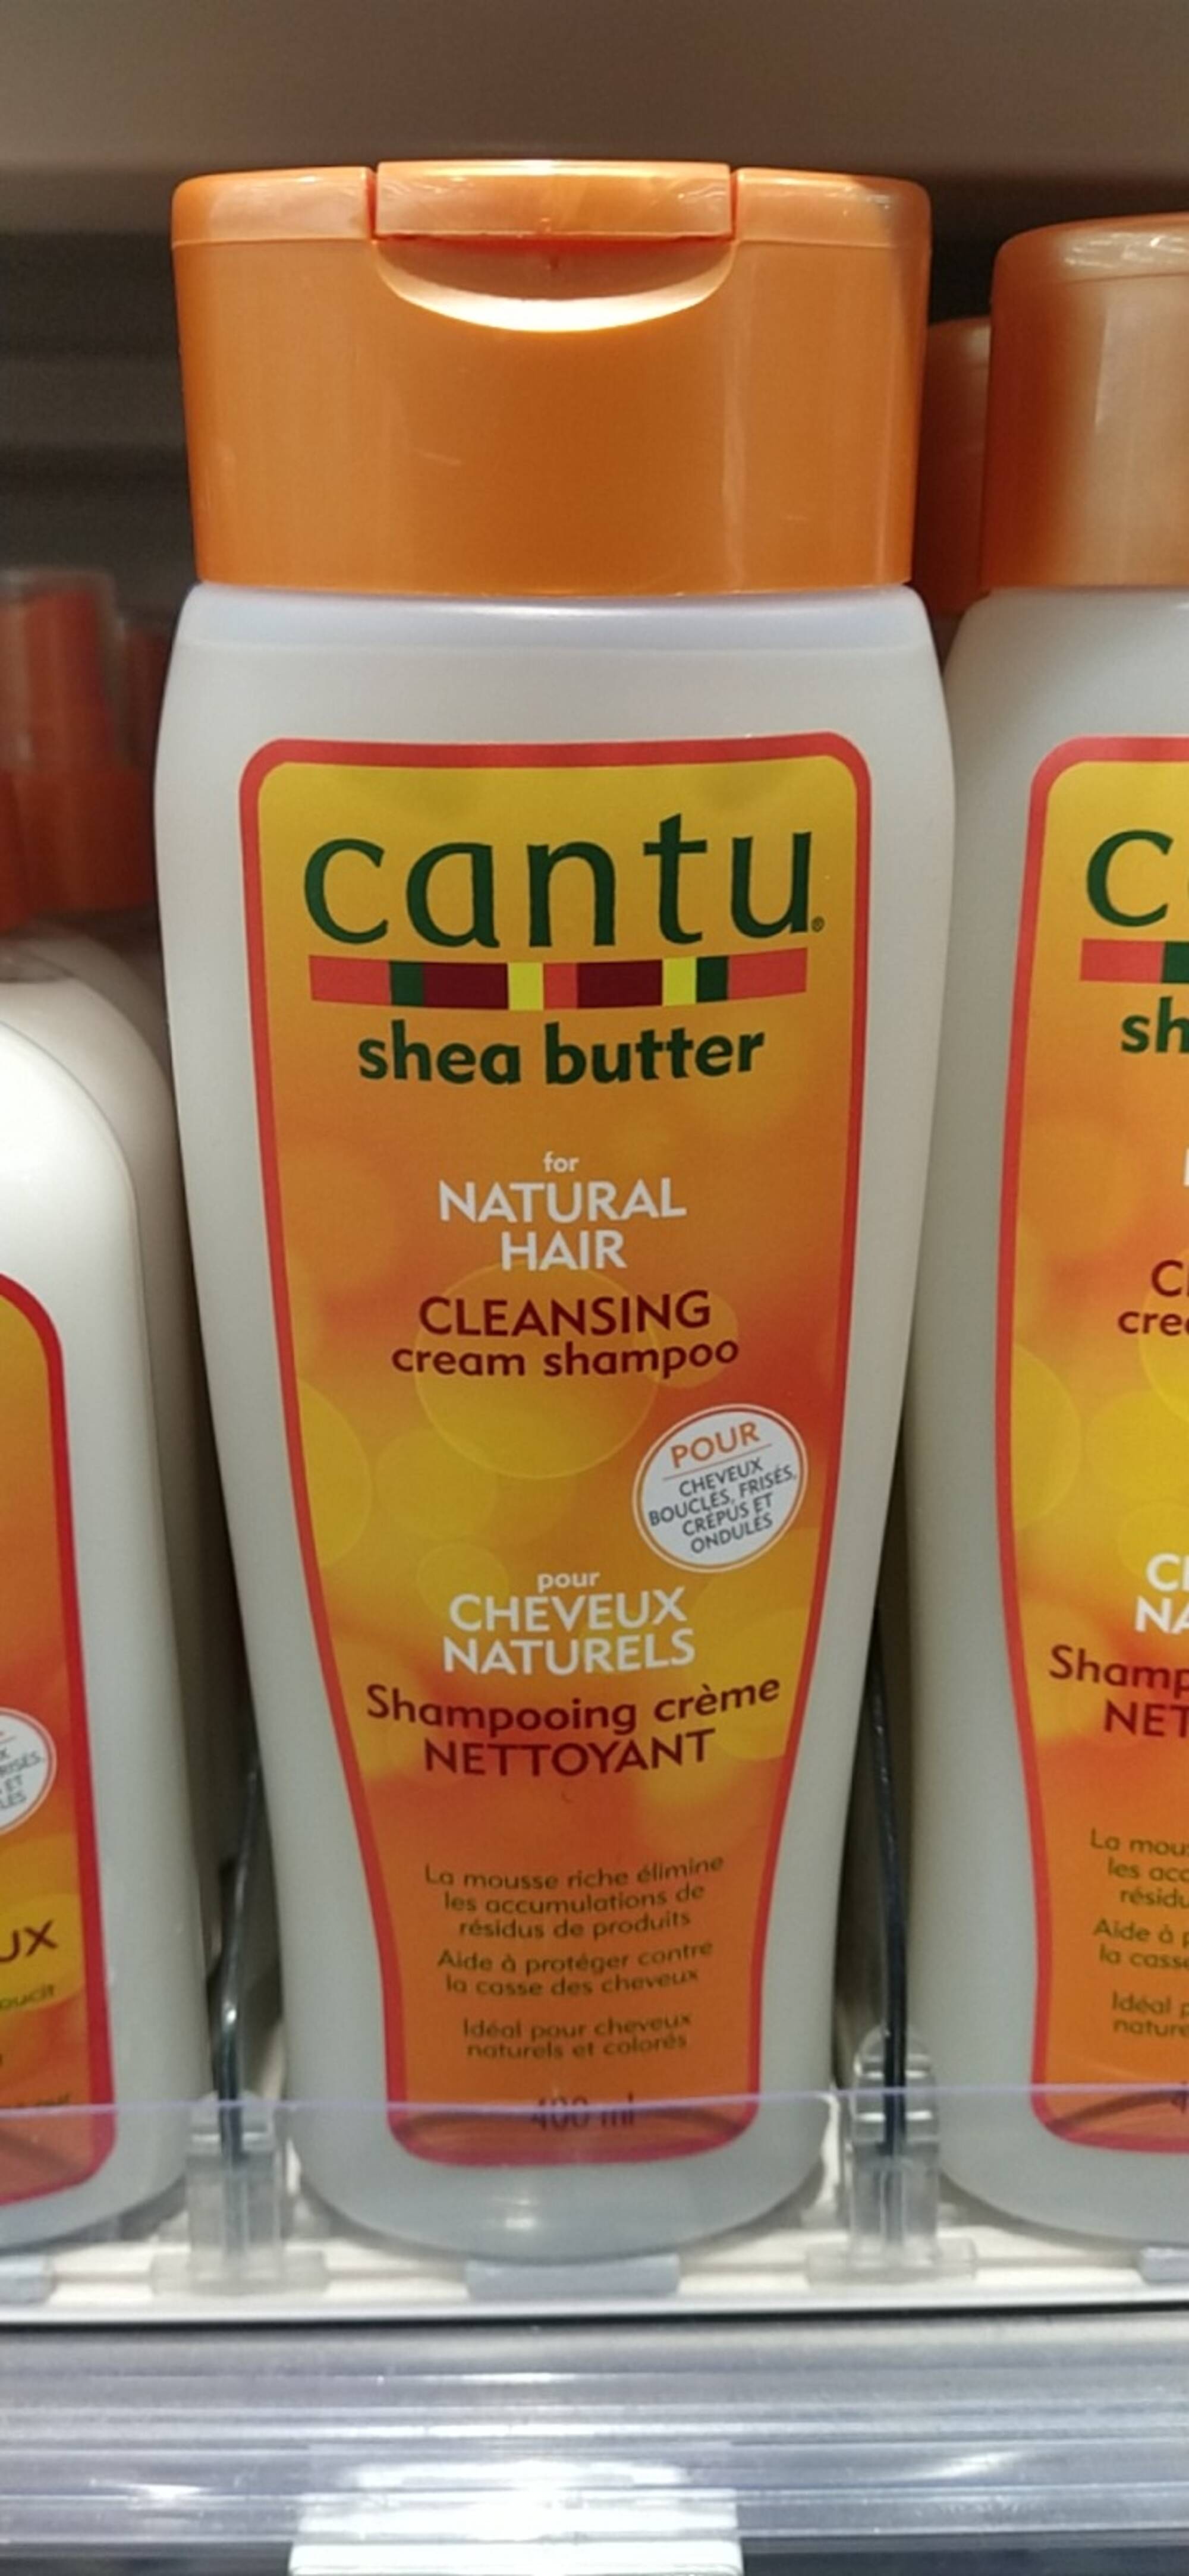 CANTU - Shea butter pour cheveux naturels - Shampooing crème